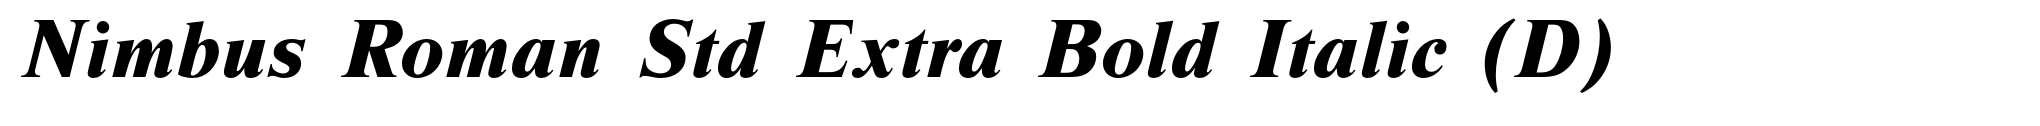 Nimbus Roman Std Extra Bold Italic (D) image